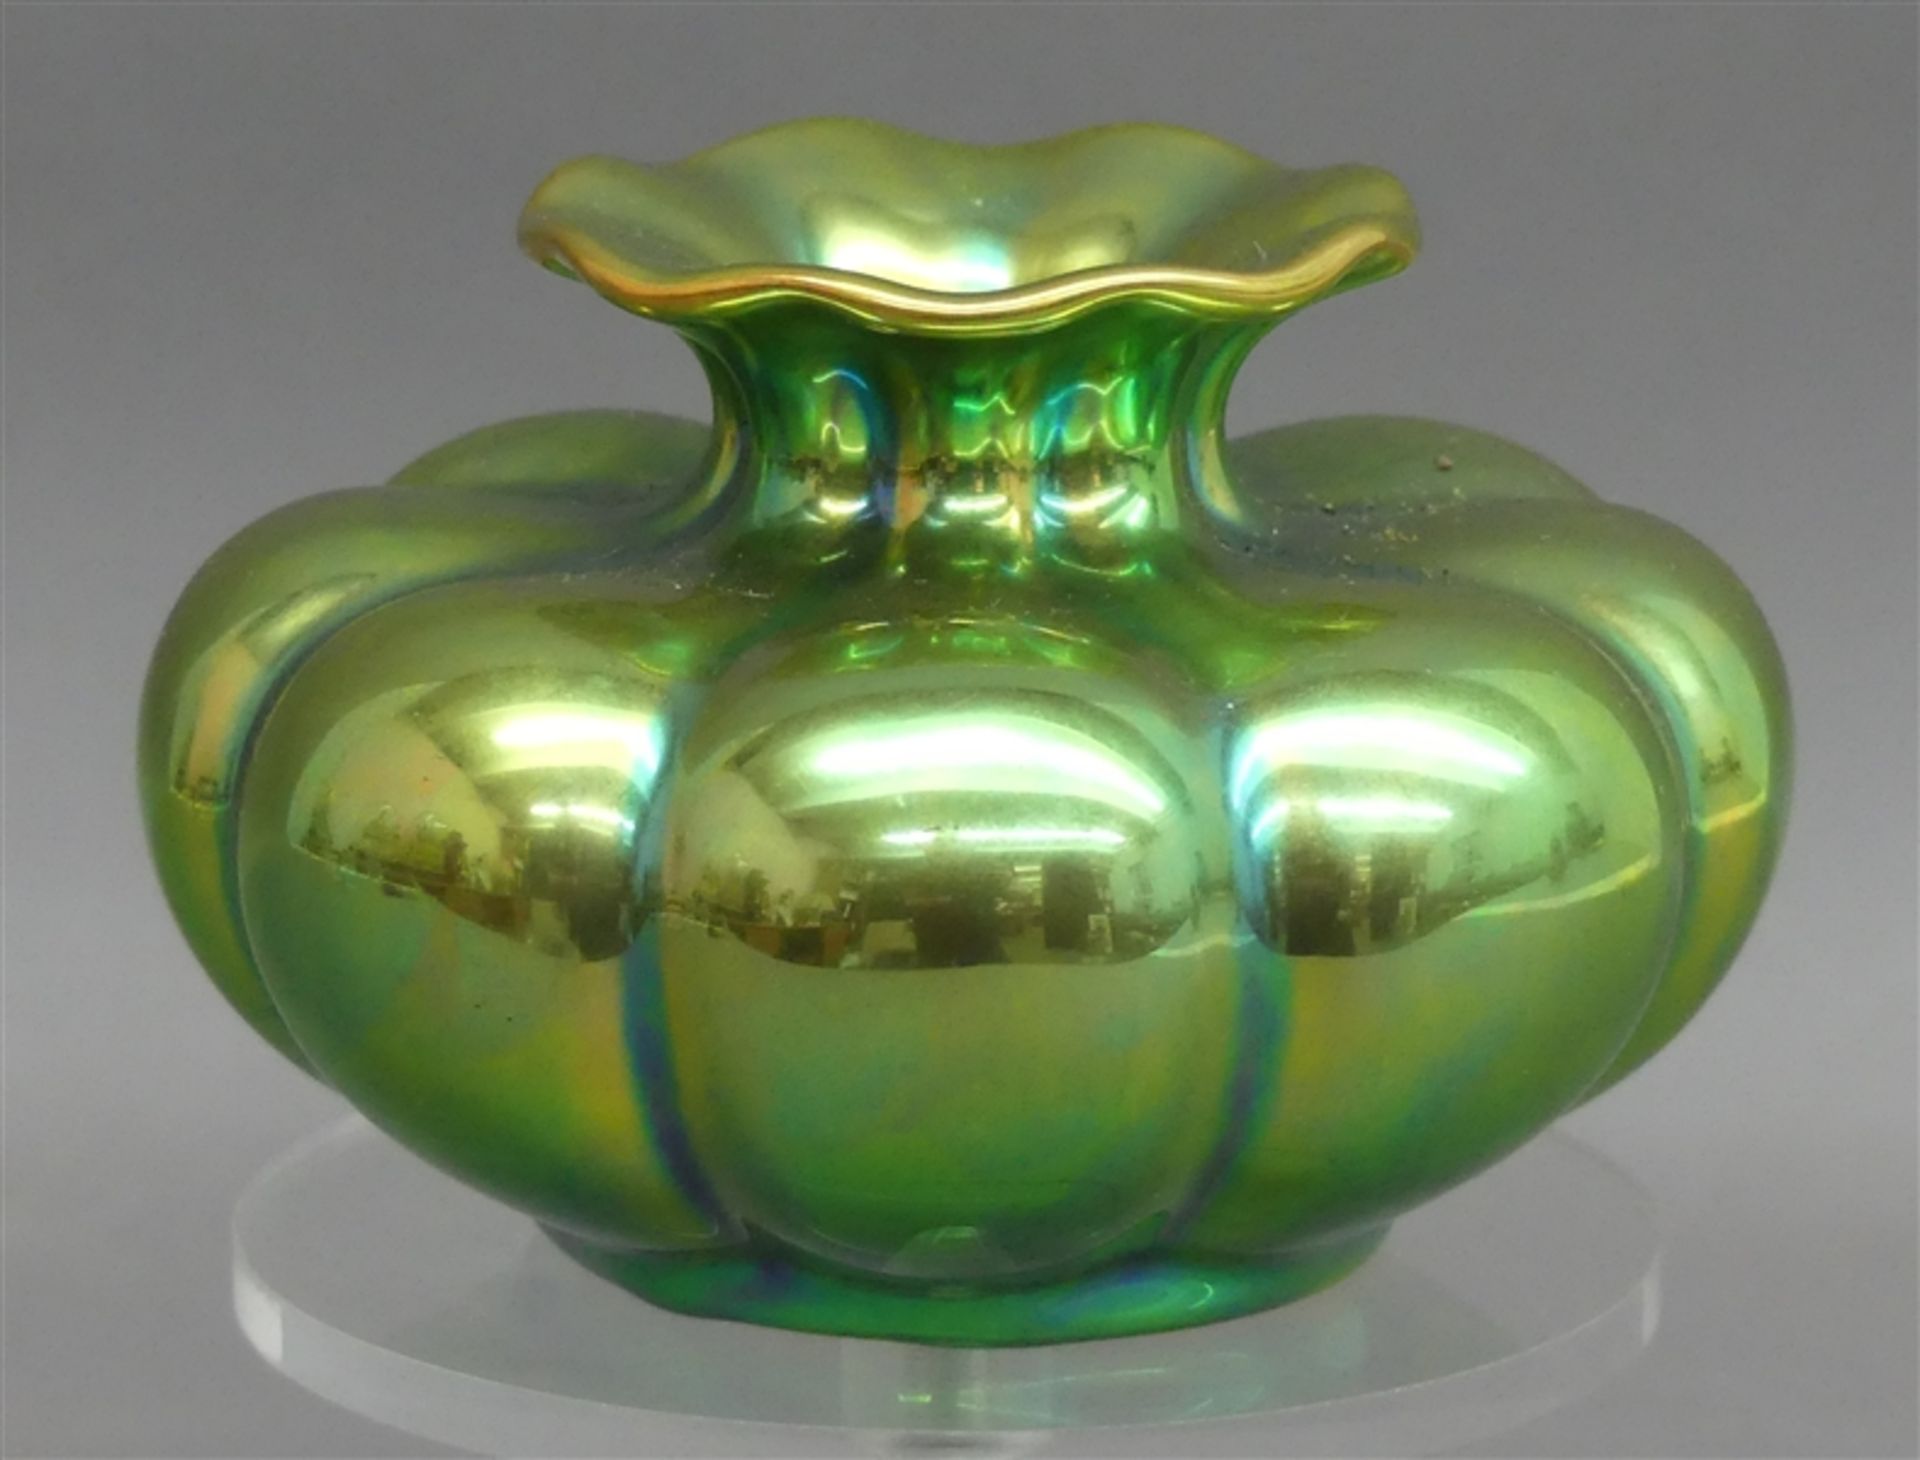 Glasvase irisierend, grün, Bodenmarke Zsolnay, Ungarn, 20. Jh., h 7,5 cm,